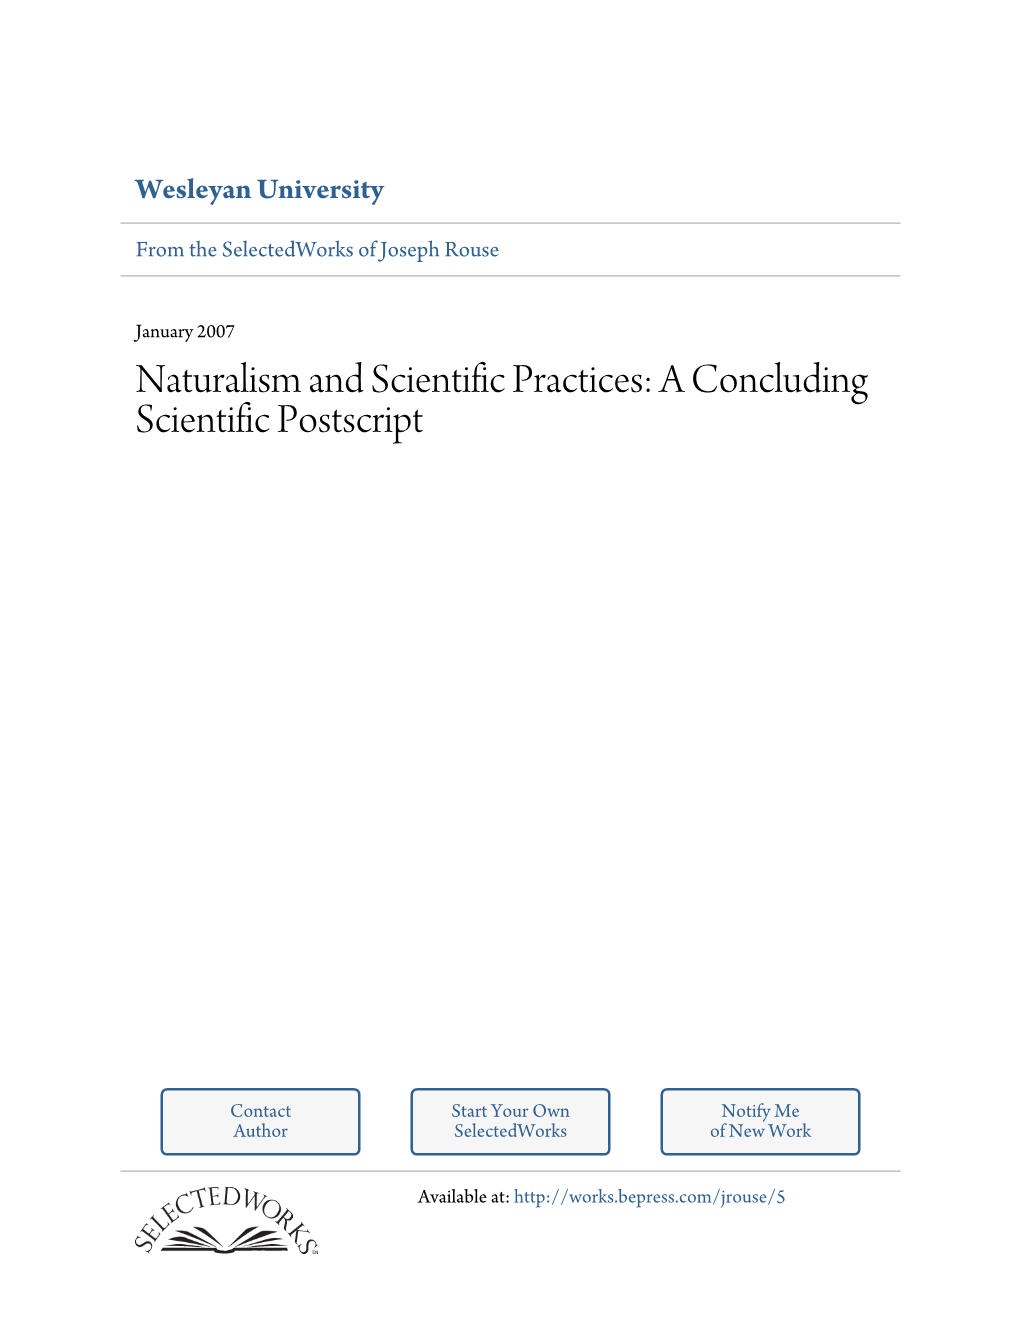 Naturalism and Scientific Practices: a Concluding Scientific Postscript